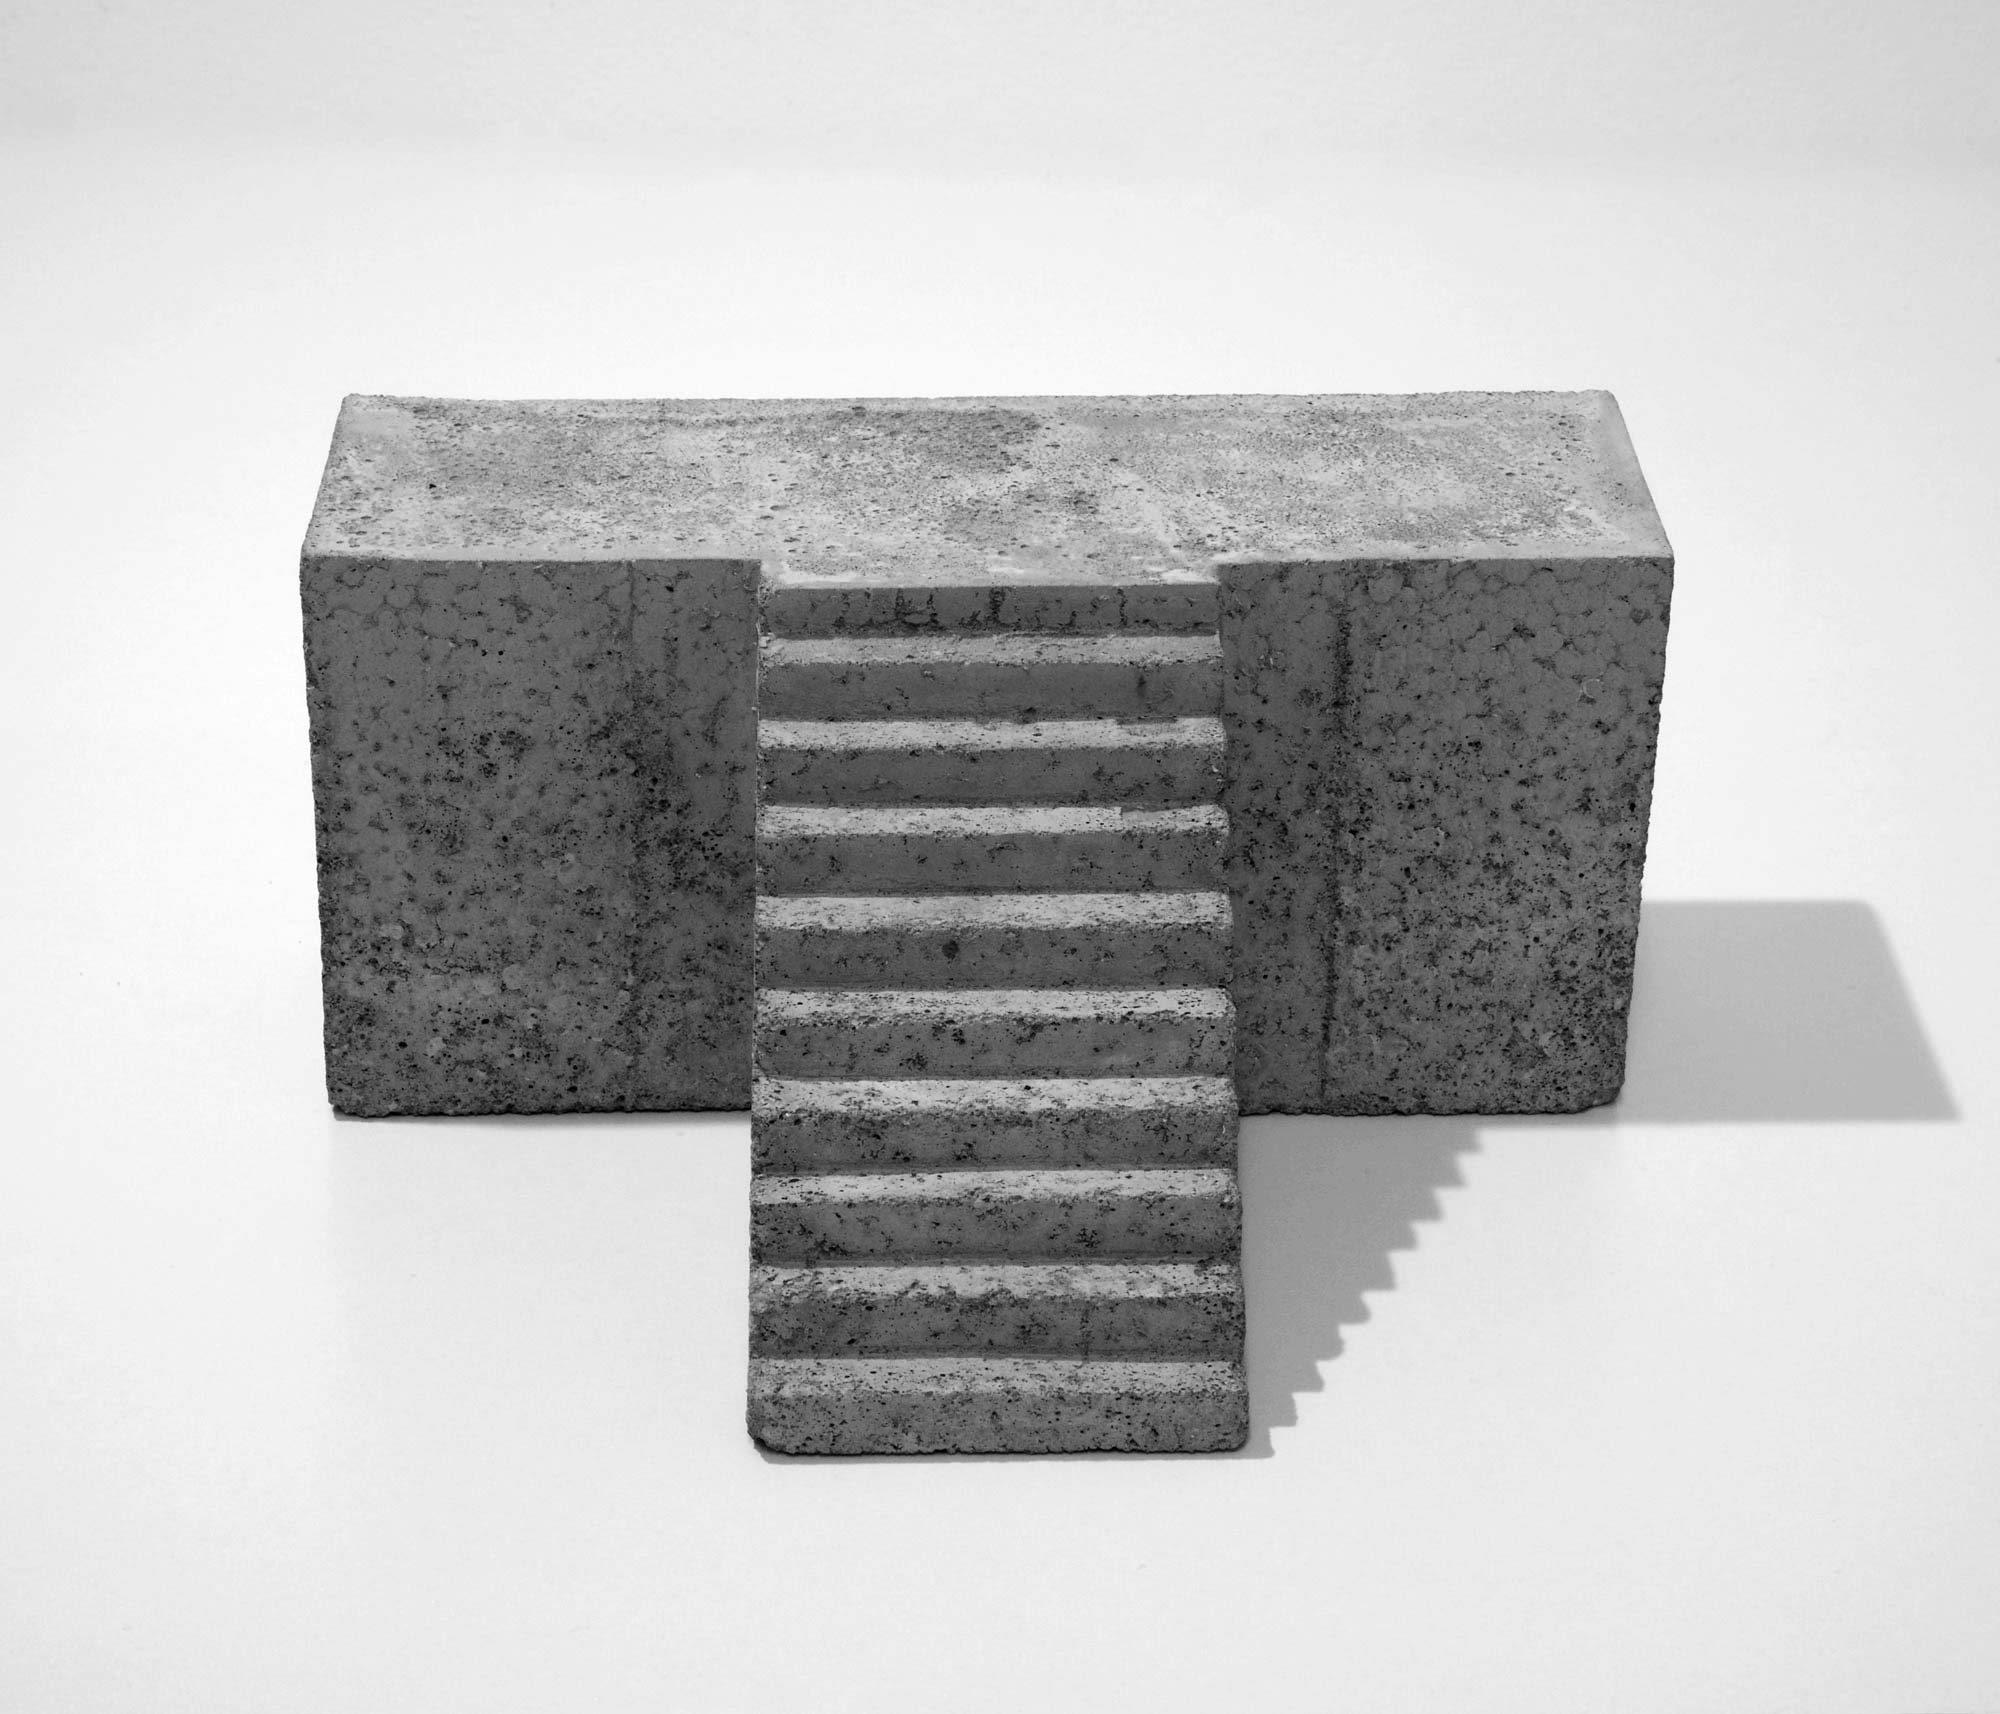 mattia listowski art design objet décoration sculpture béton moulage micro architecture maquette escalier estrade édition limitée numérotée signée paris bruxelles 2020